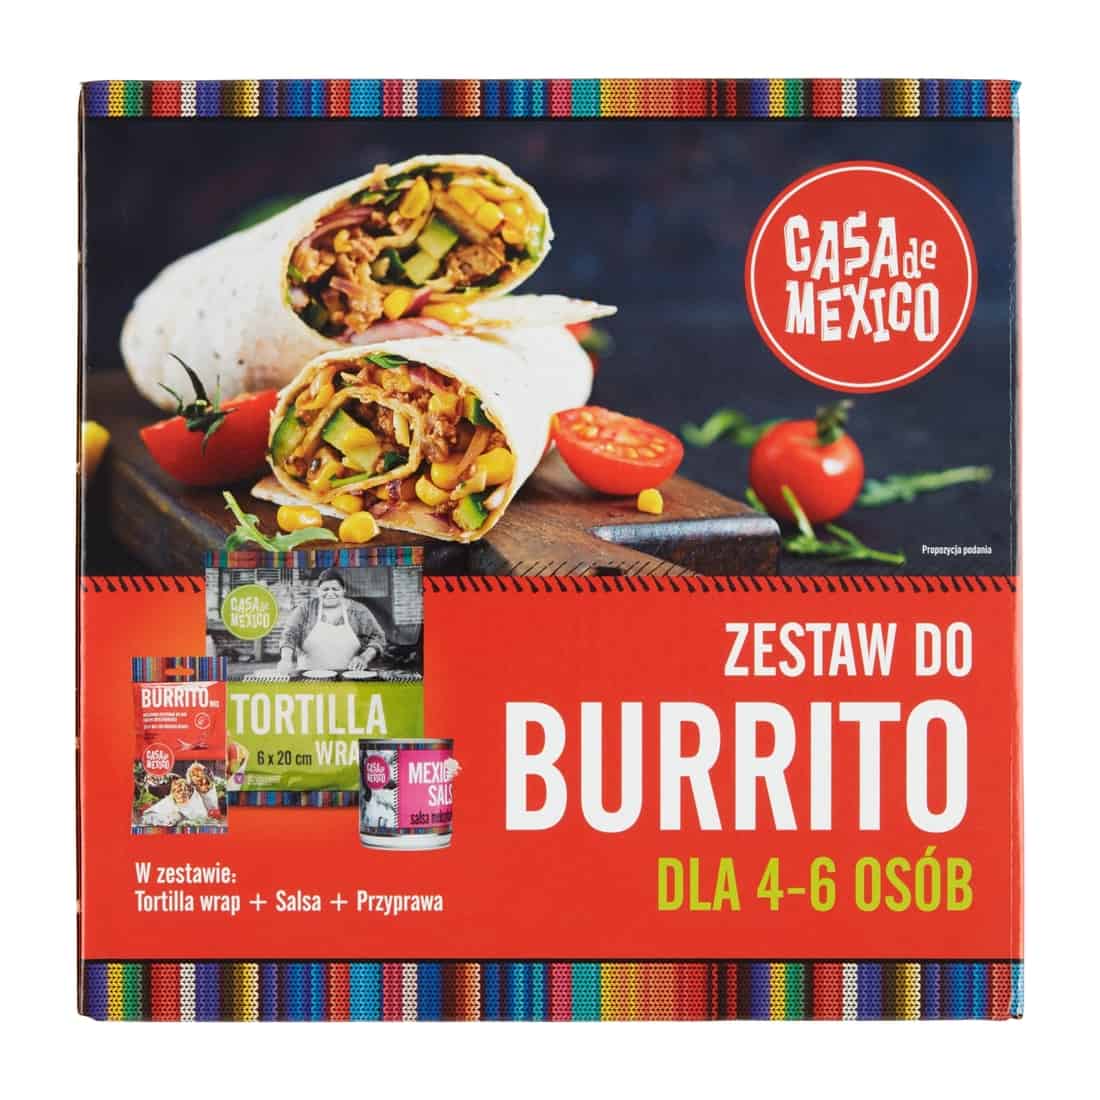 Zestaw Burrito 475g Casa de Mexico